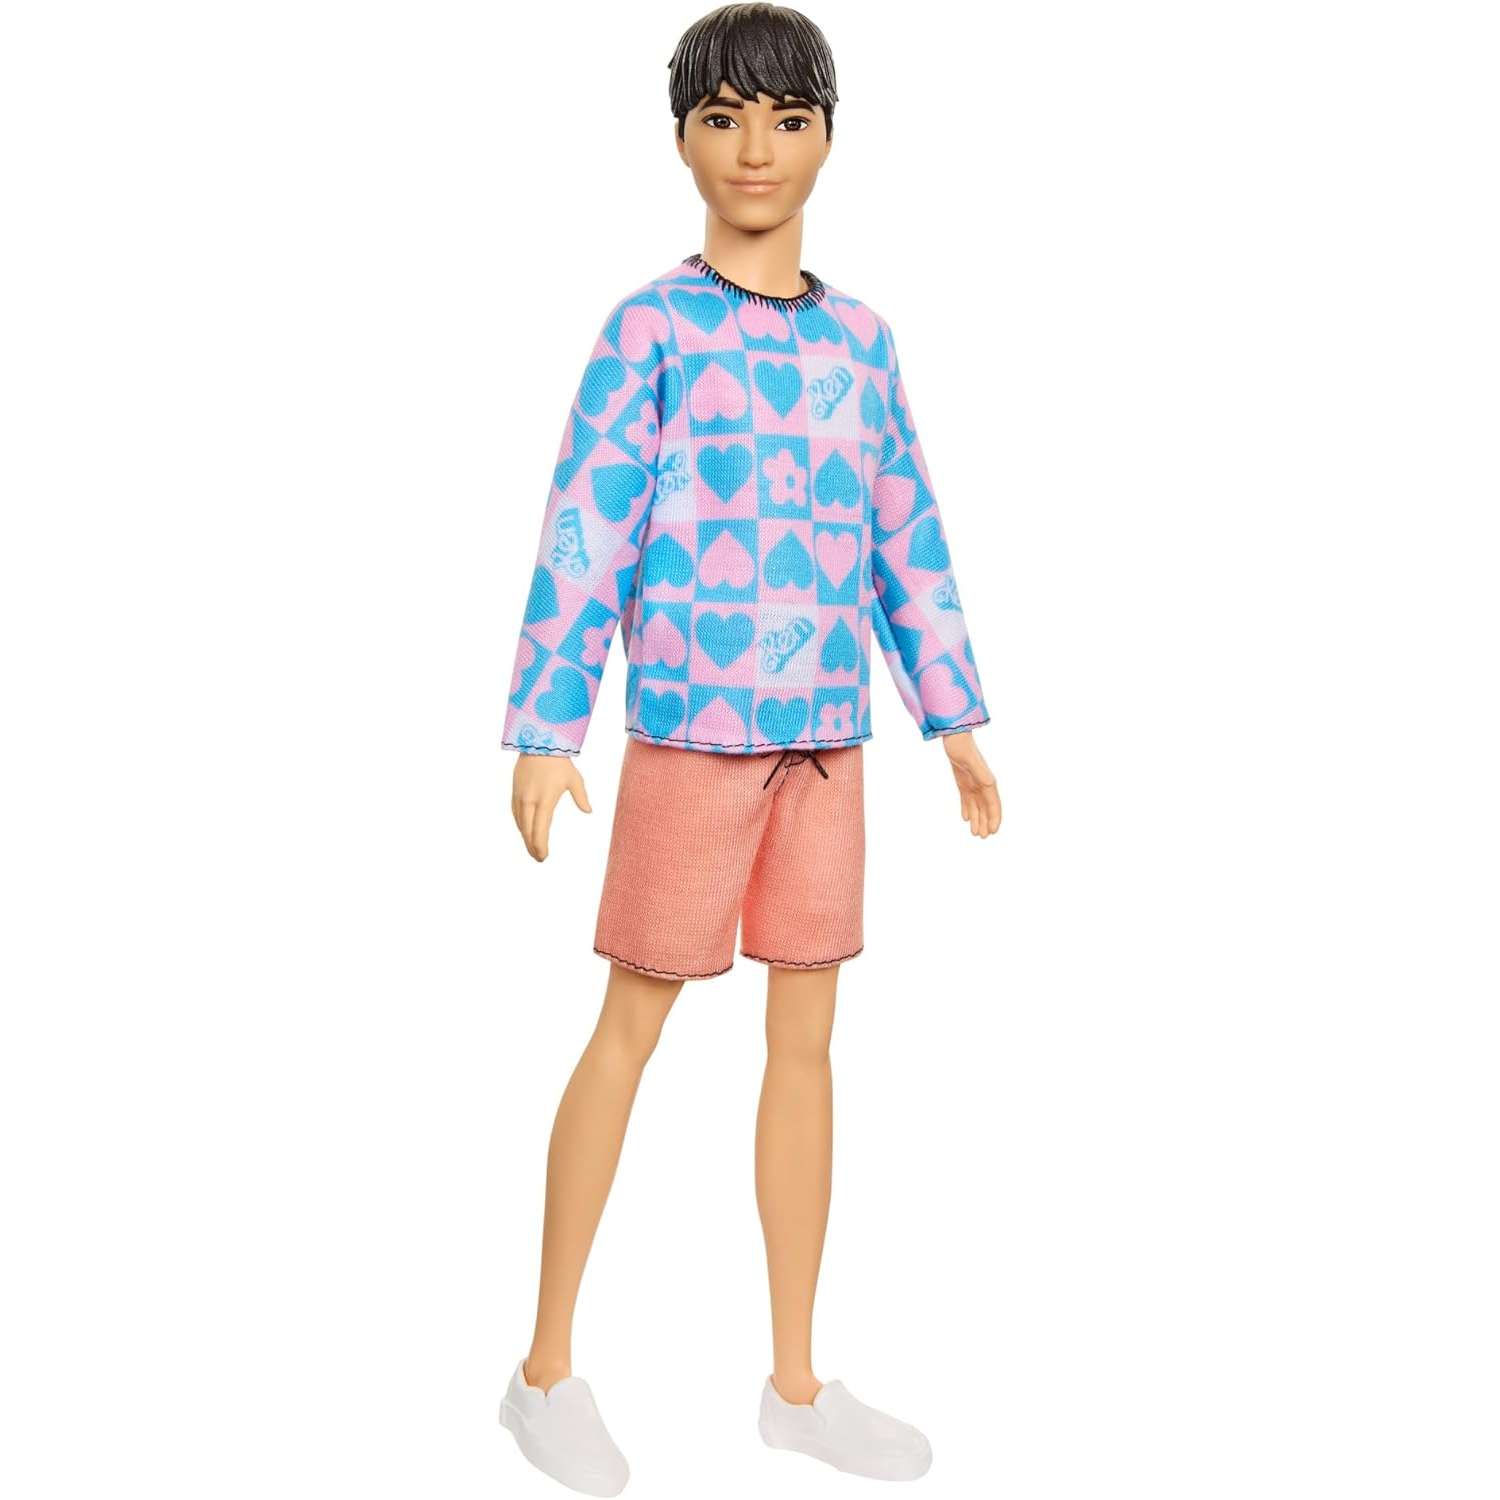 Кукла Barbie Fashionista Ken голубой и розовый свитер HRH24 HRH24 - фото 2